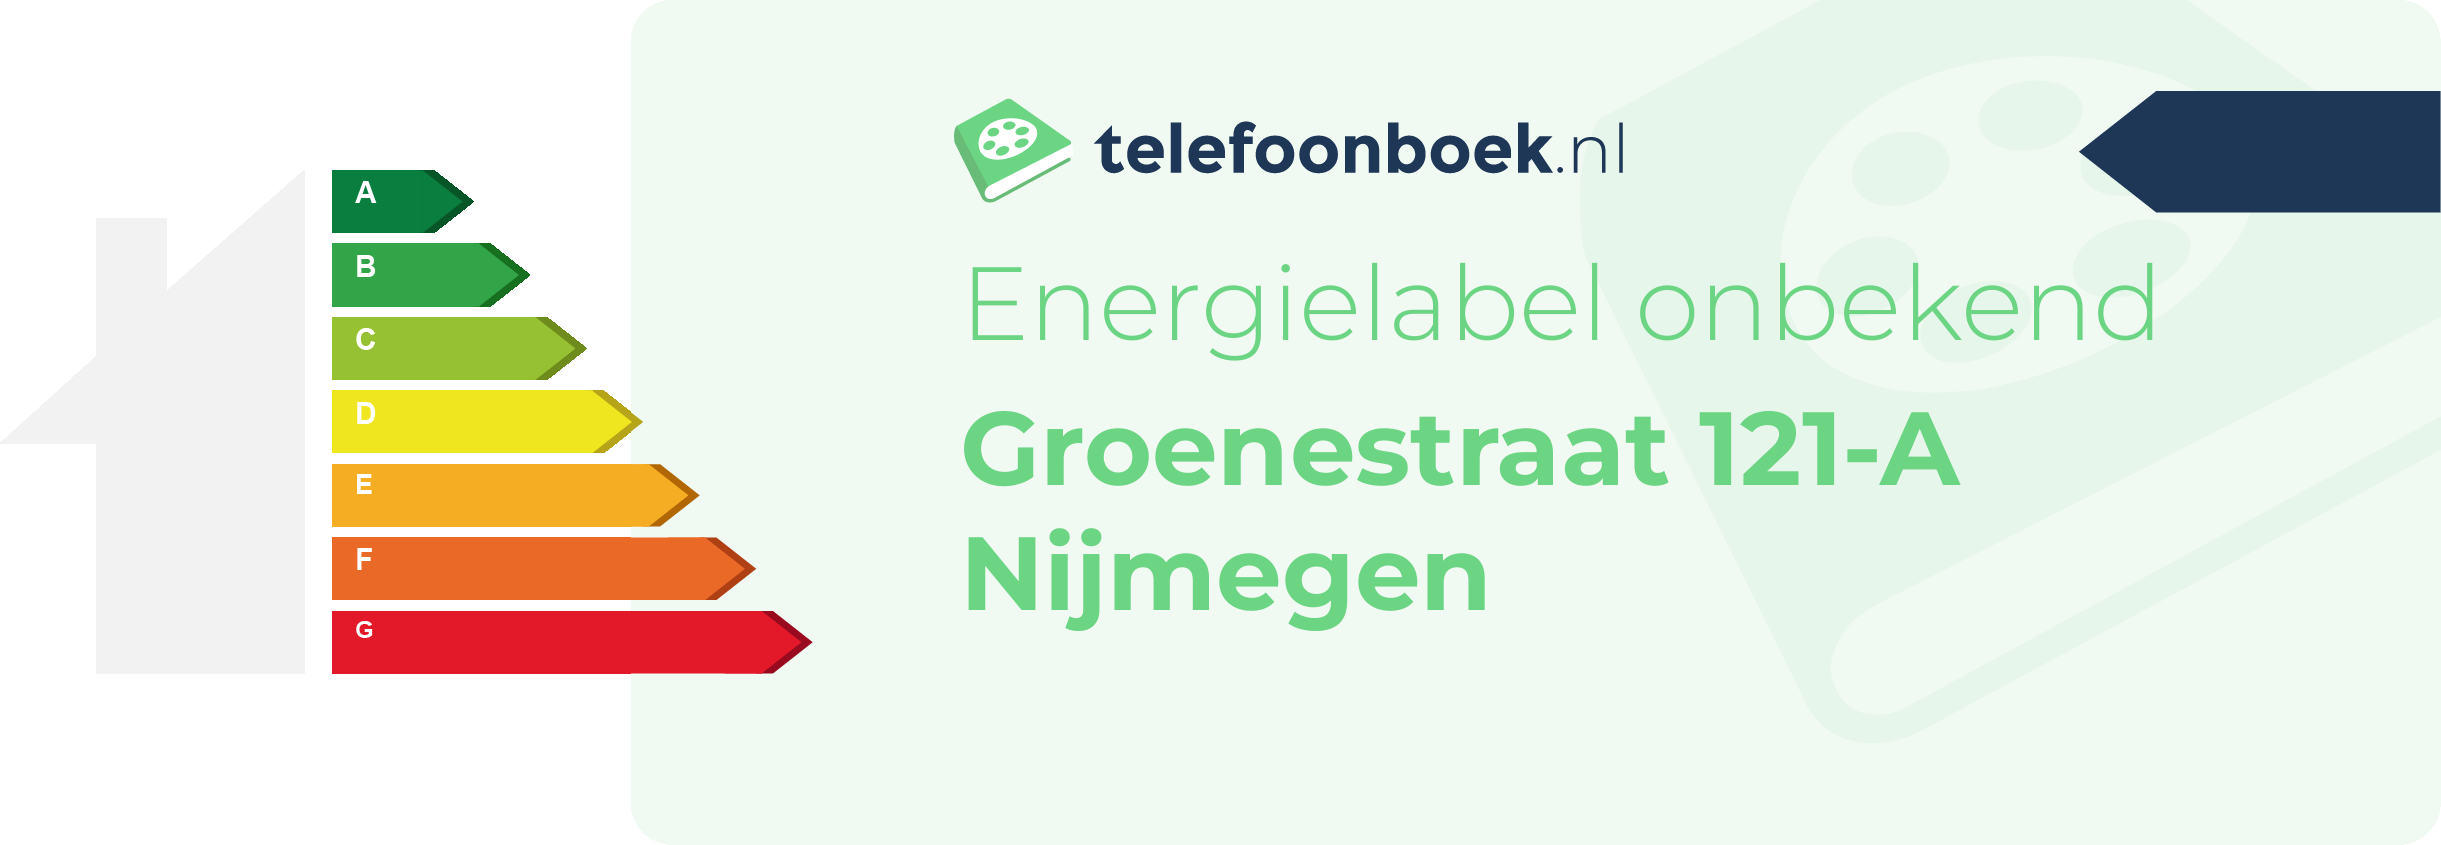 Energielabel Groenestraat 121-A Nijmegen